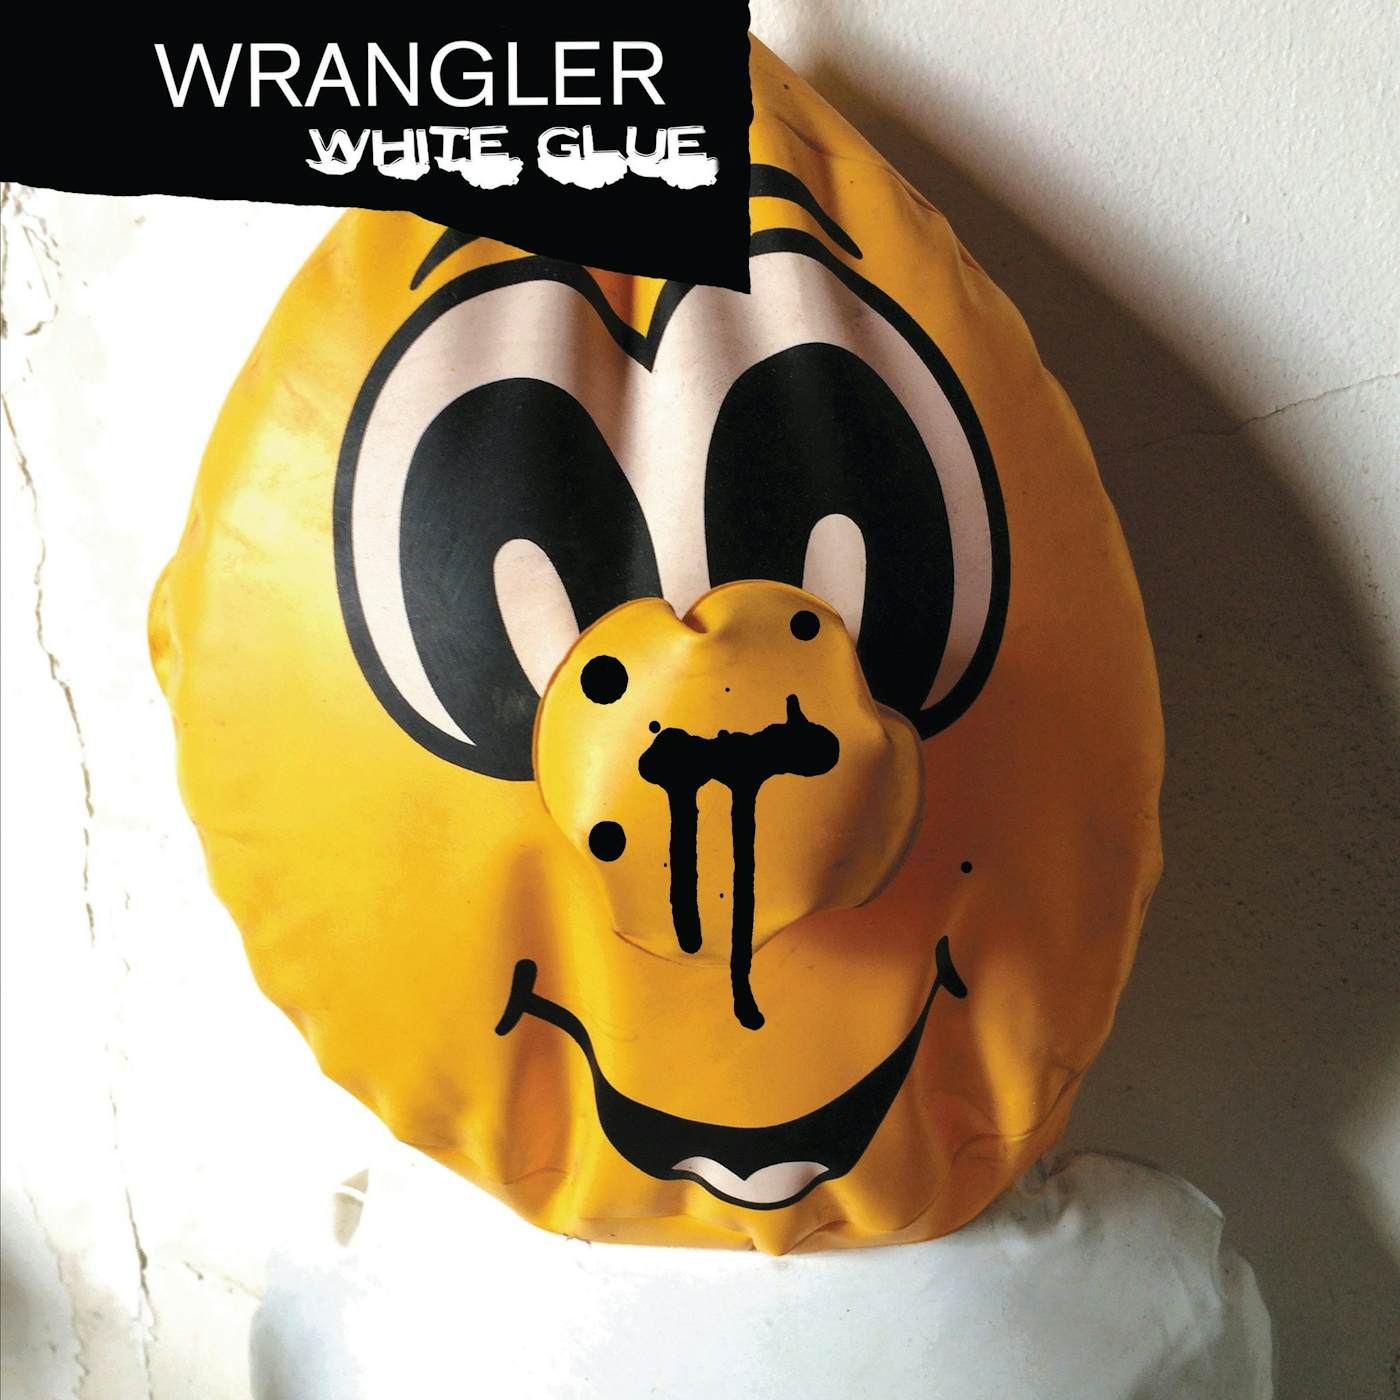 Wrangler 'White Glue' Vinyl Record